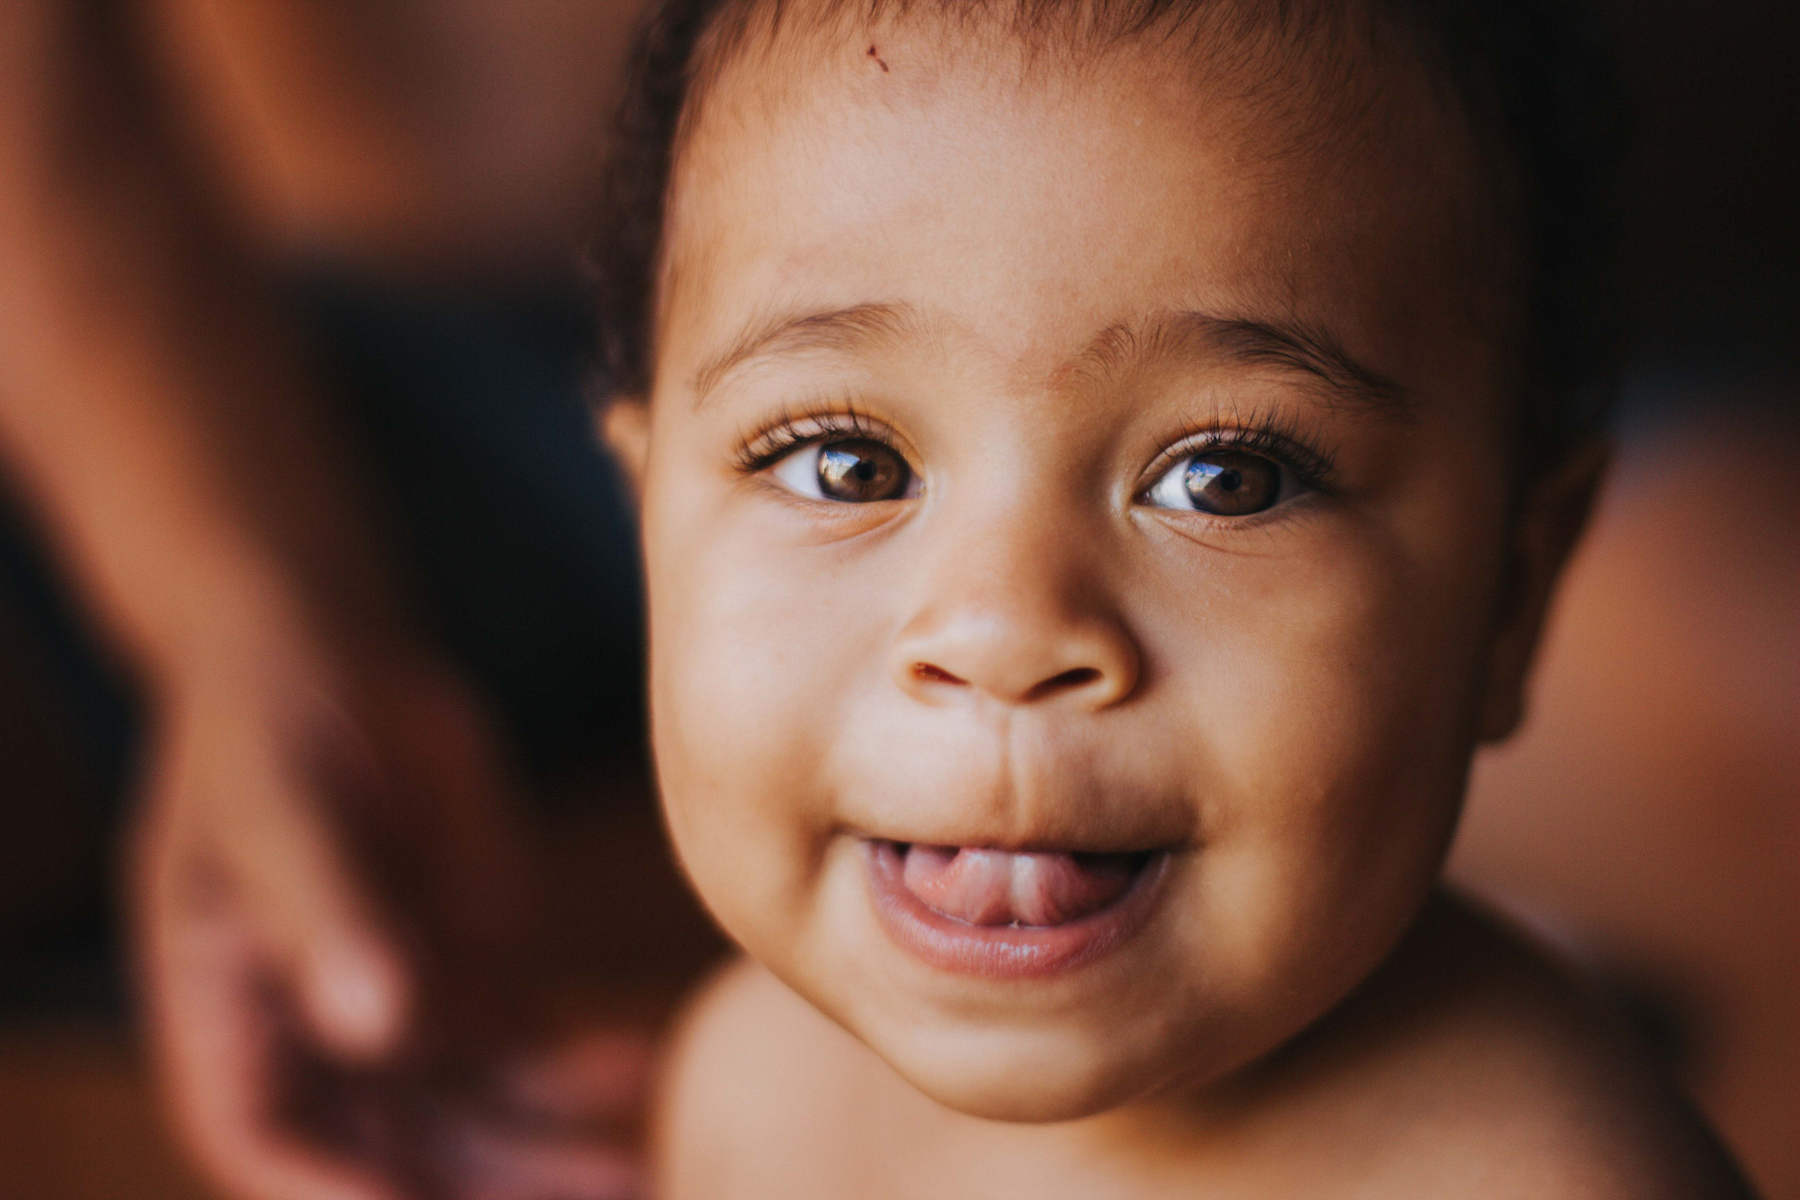 Baby smiling at camera at a local adoption agency.